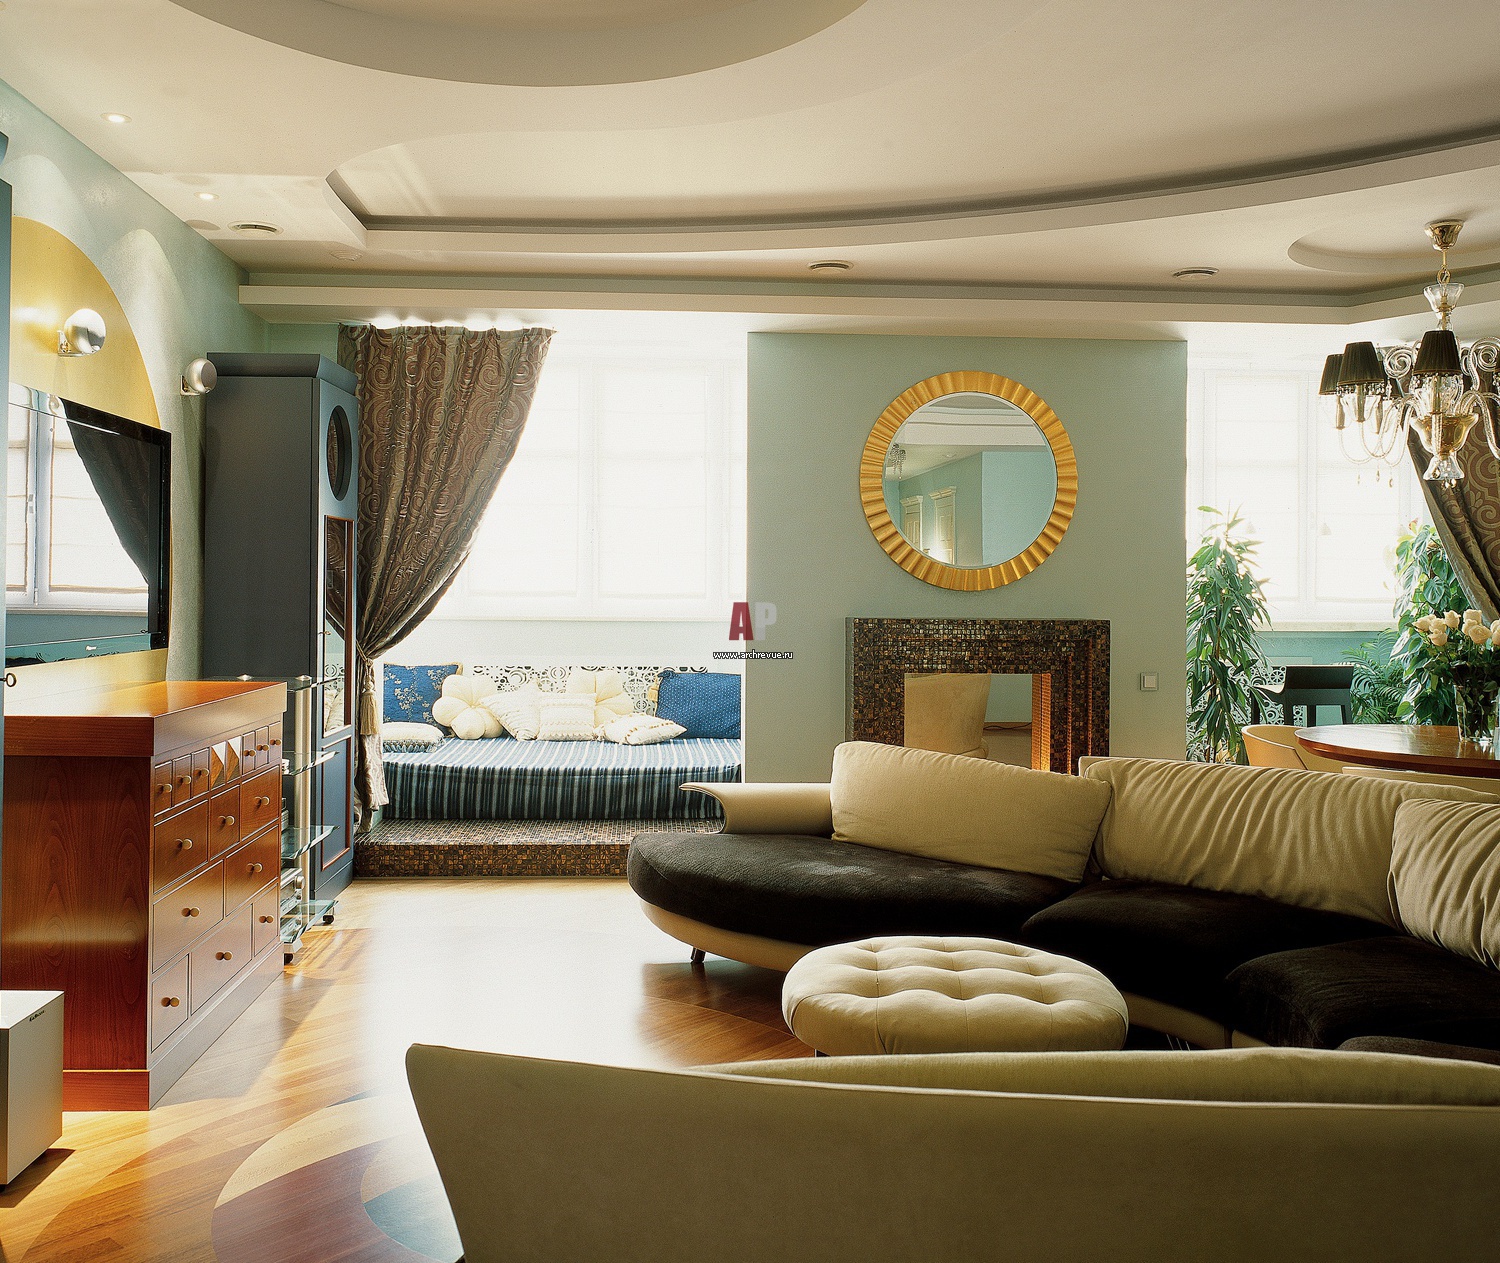 Оформляем квартиру: 22 самых популярных стиля интерьера - описание